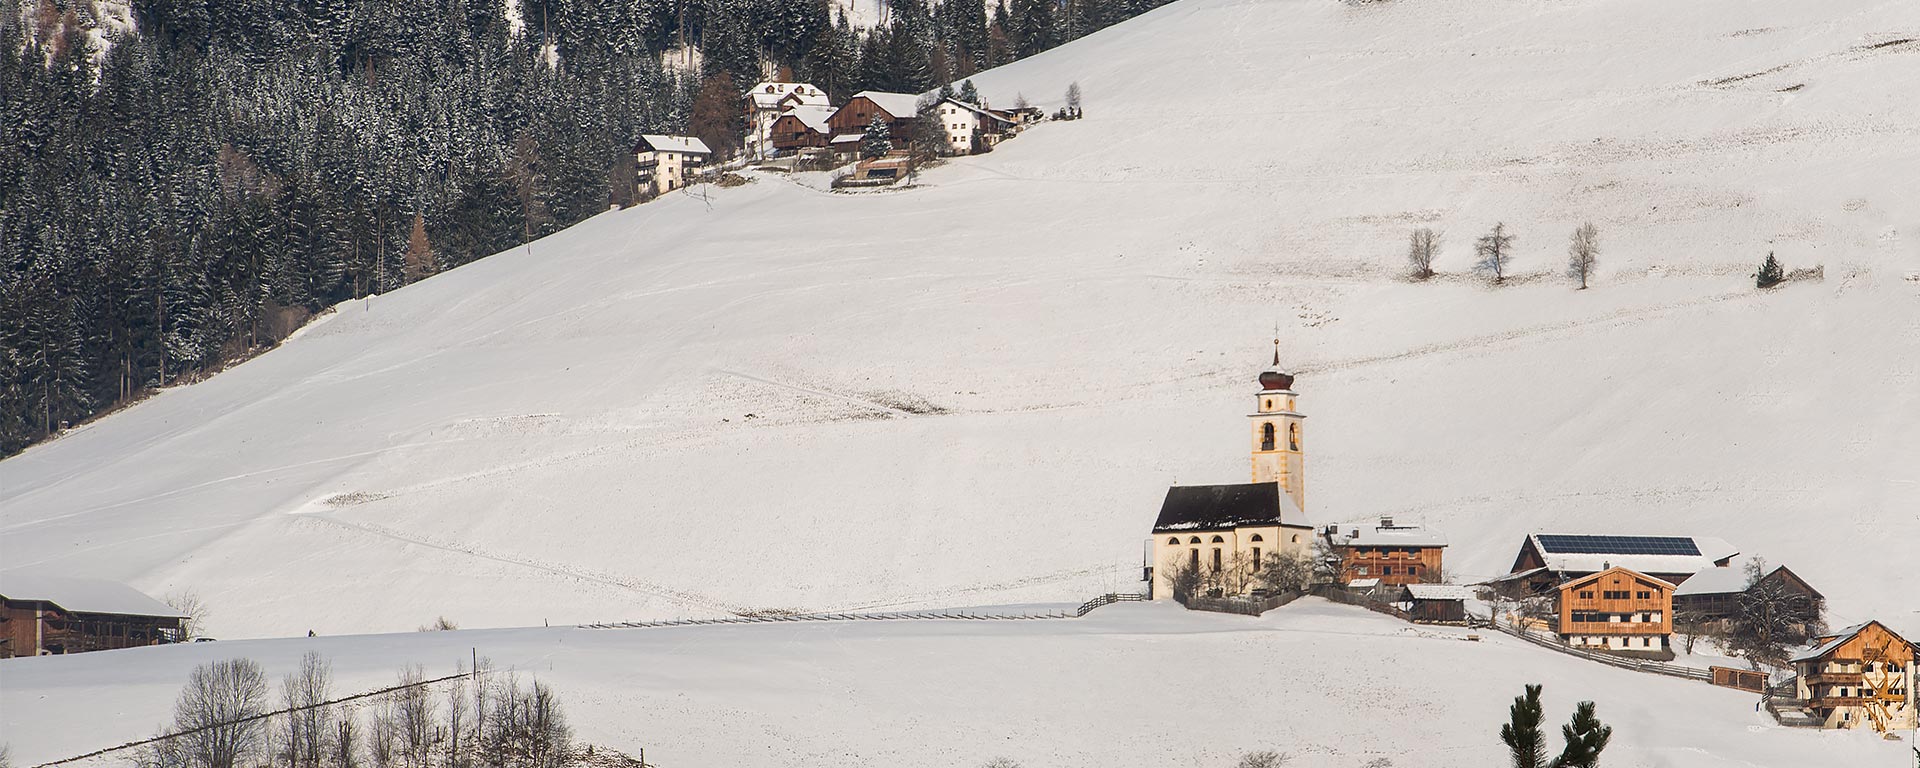 Kirche von St. Vigil inmitten einer schneebedeckten Landschaft